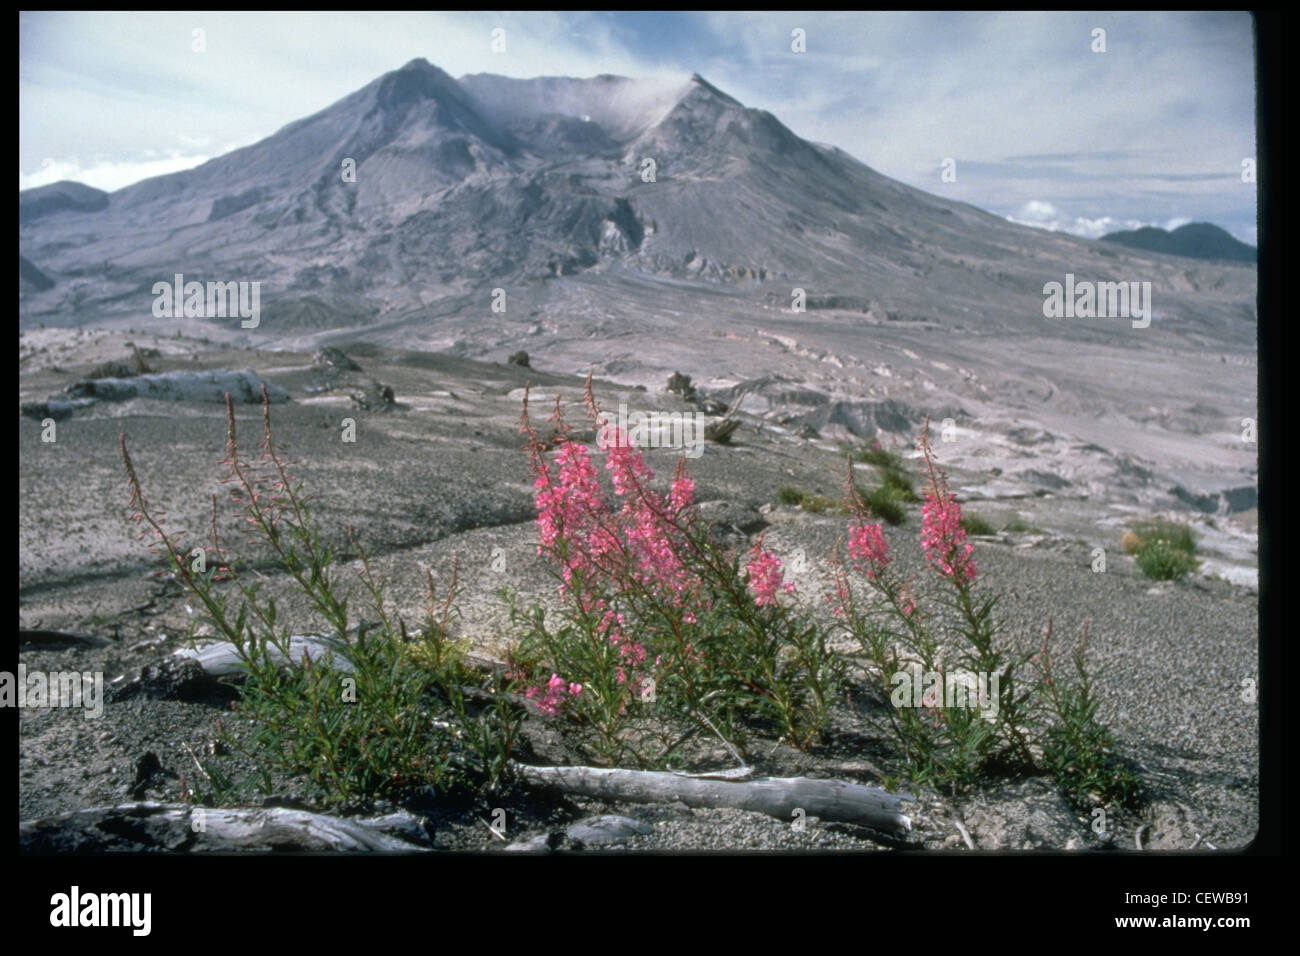 La pompier est une espèce de plantlife qui est retournée dans la région dévastée du mont St. Helens. La végétation a commencé à réapparaître dès l'été 1980, car de nombreux petits arbres et plantes ont été protégés par le manteau neigeux le 18 mai. Les graines, transportées par le vent ou par les animaux, sont également entrées dans la zone et ont grandi. En 1985, les crêtes entourant le volcan étaient couvertes de nouvelles croissances. Banque D'Images